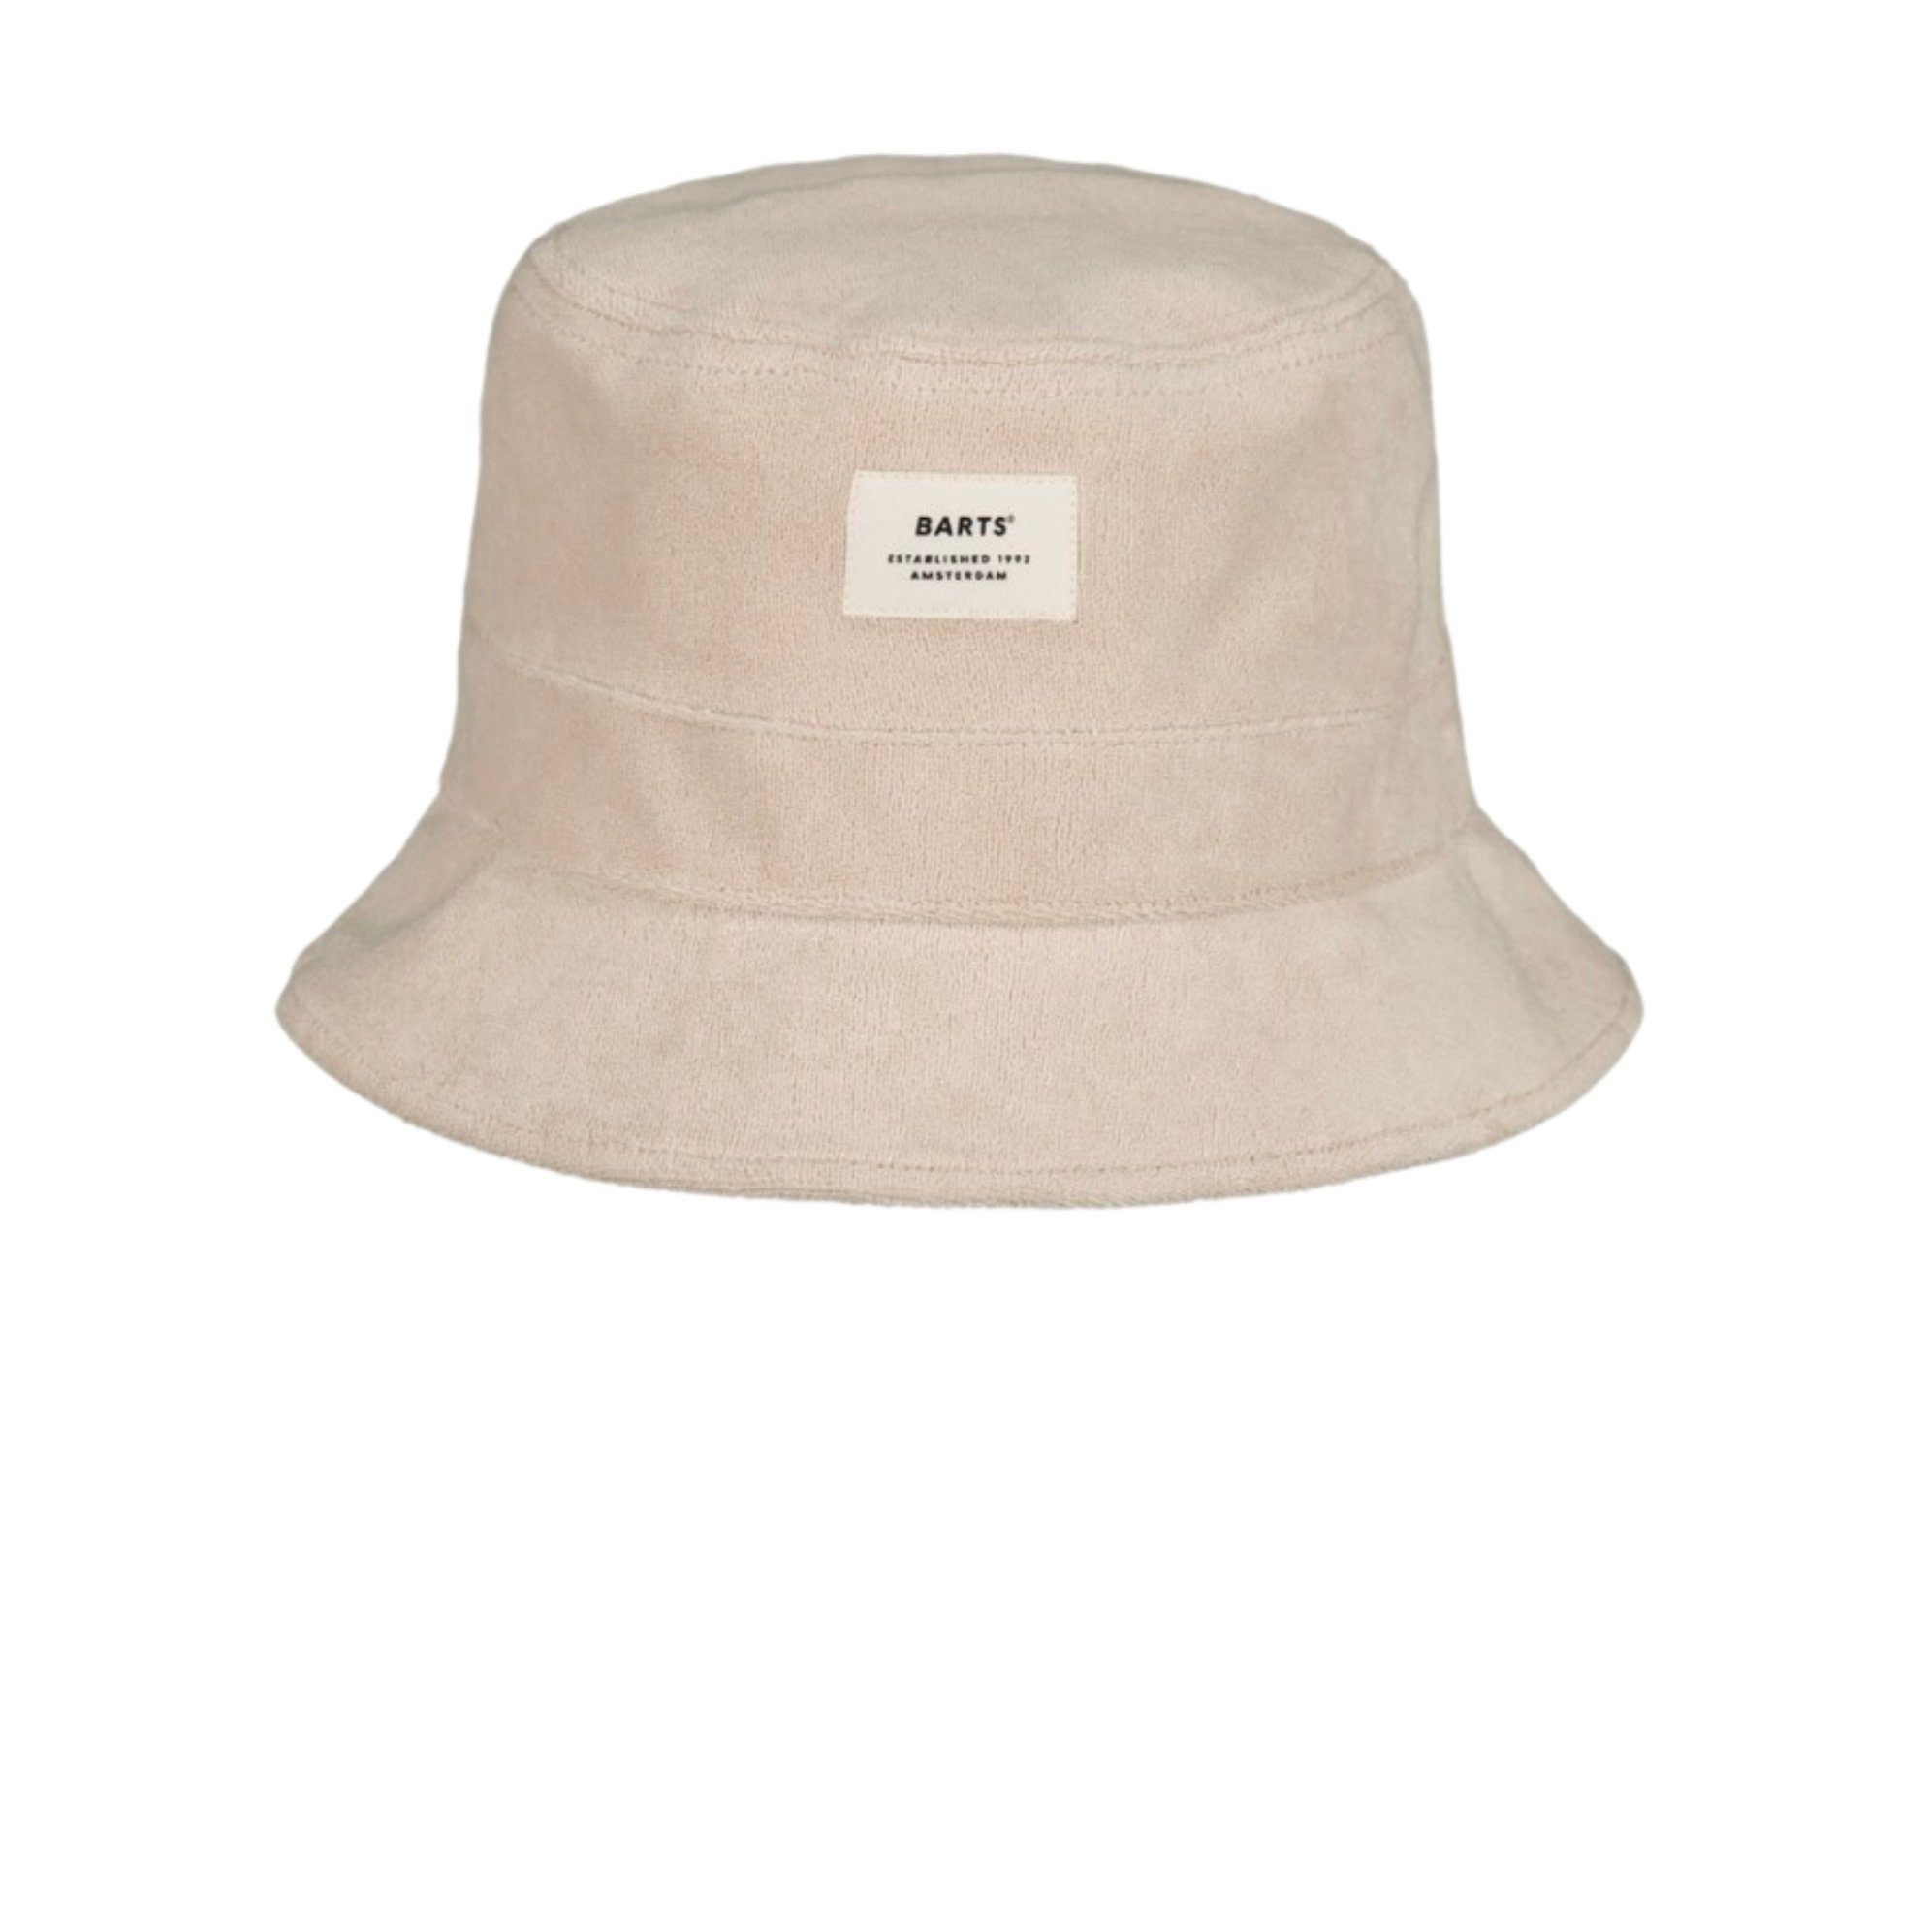 Barts Fischerhut Fischerhut Bucket Hat Gladiola in der Farbe cream, pink oder taupe Bucket Hat